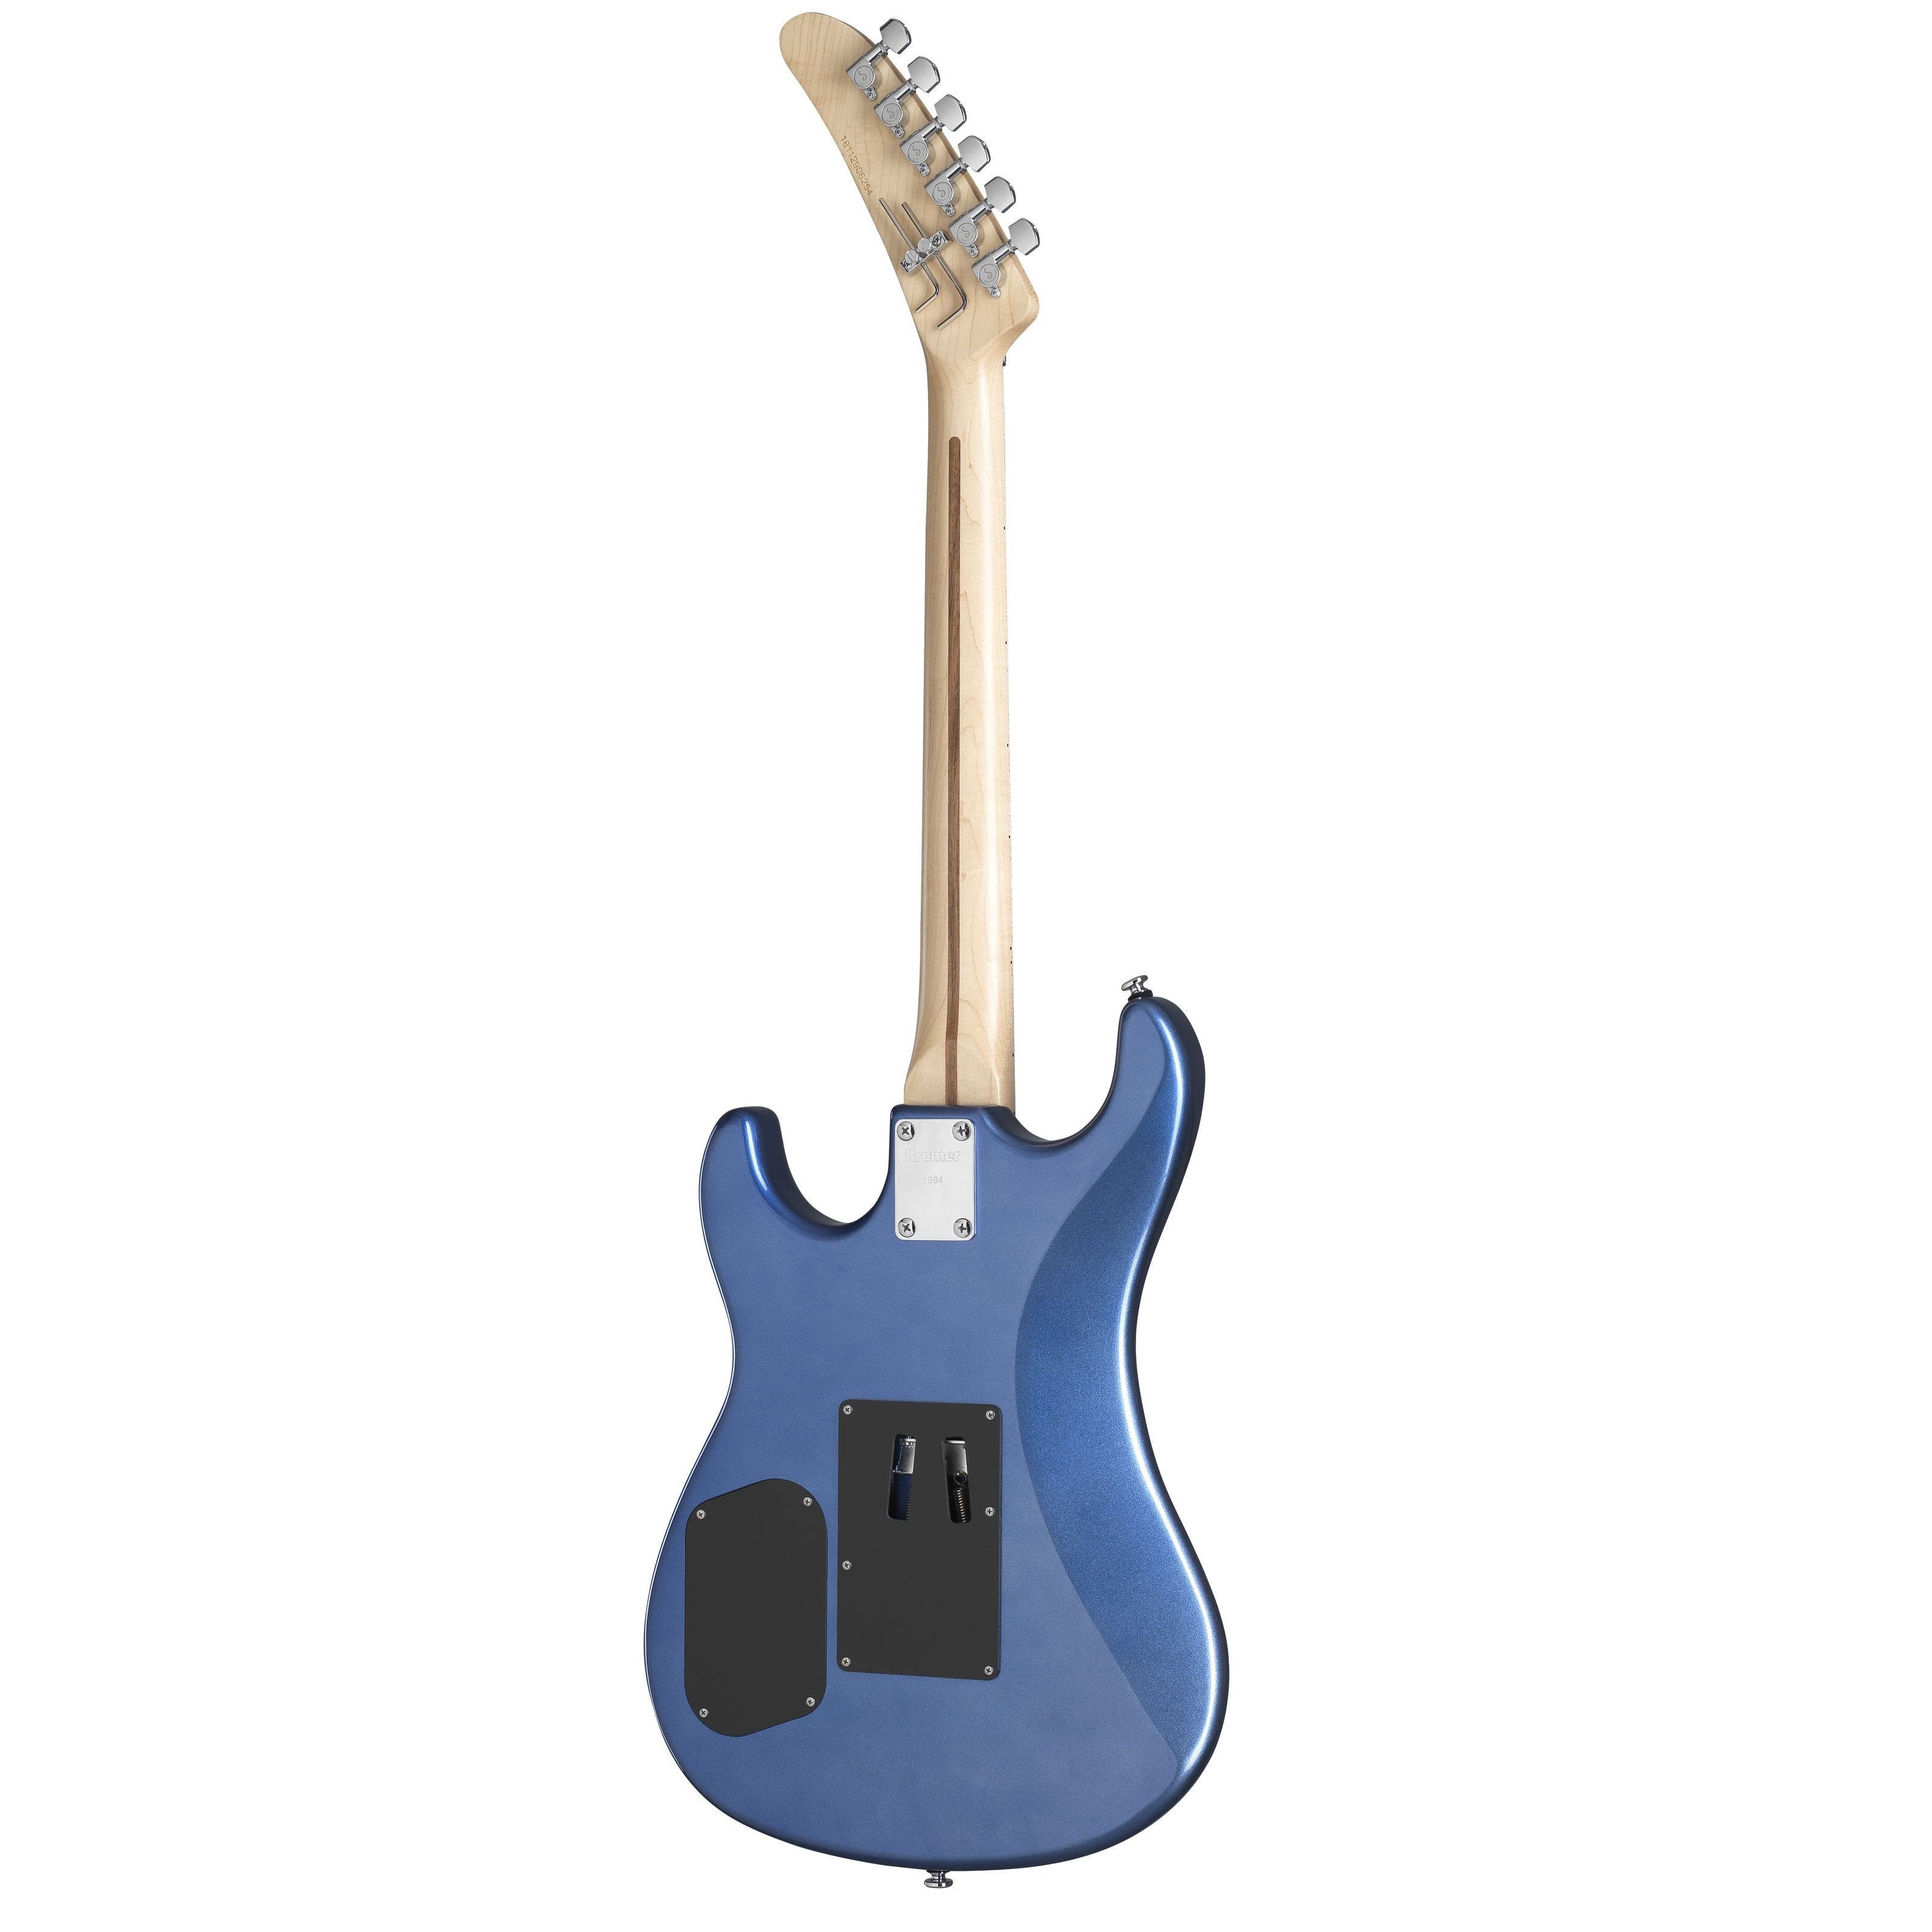 Guitars E-Gitarre Metallic Blue - Kramer 84 Spielzeug-Musikinstrument, The